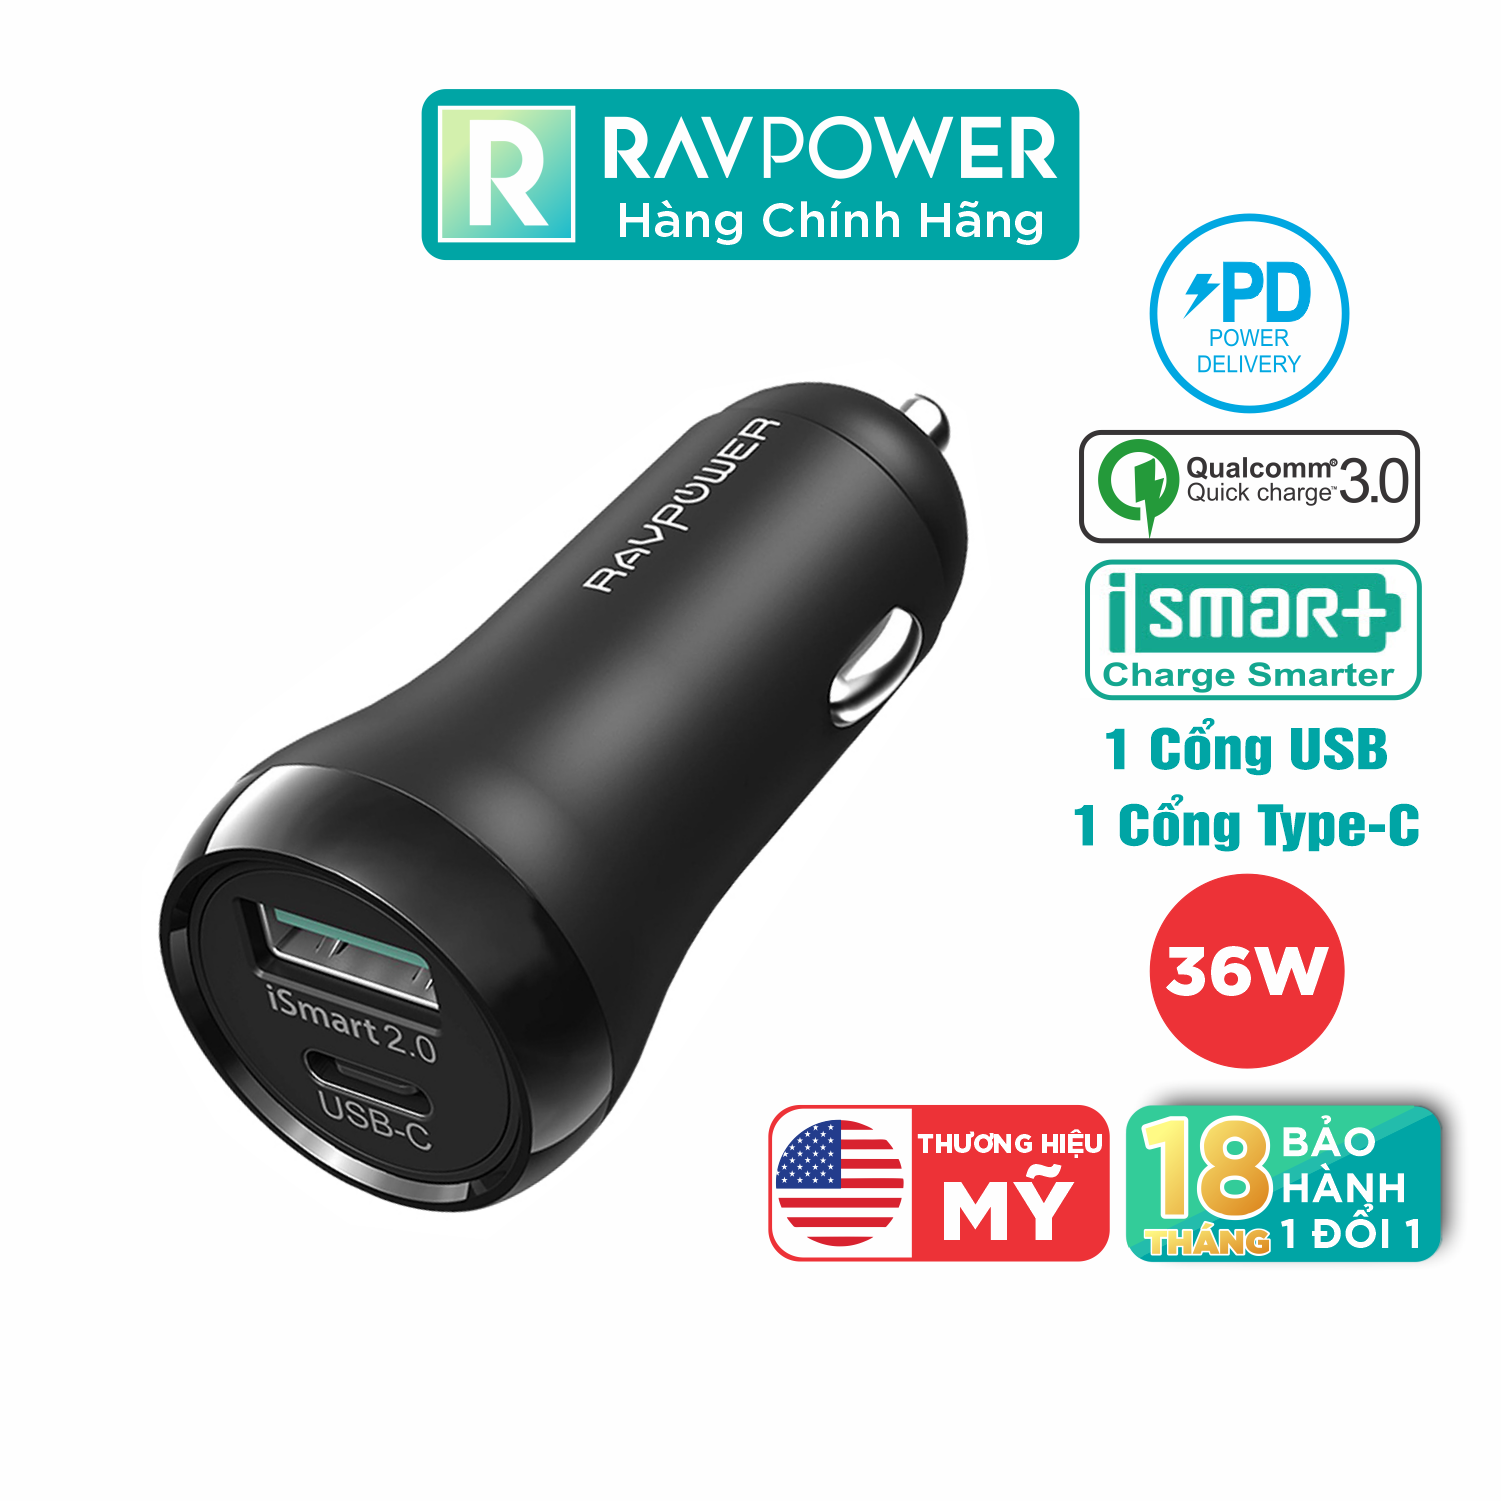 Sạc Xe Hơi 1 USB + 1 USB Type C RAVPower RP-PC091 Hỗ Trợ Sạc Nhanh PD Power Delivery 18W và Quick Charge 3.0 - Hàng Chính Hãng